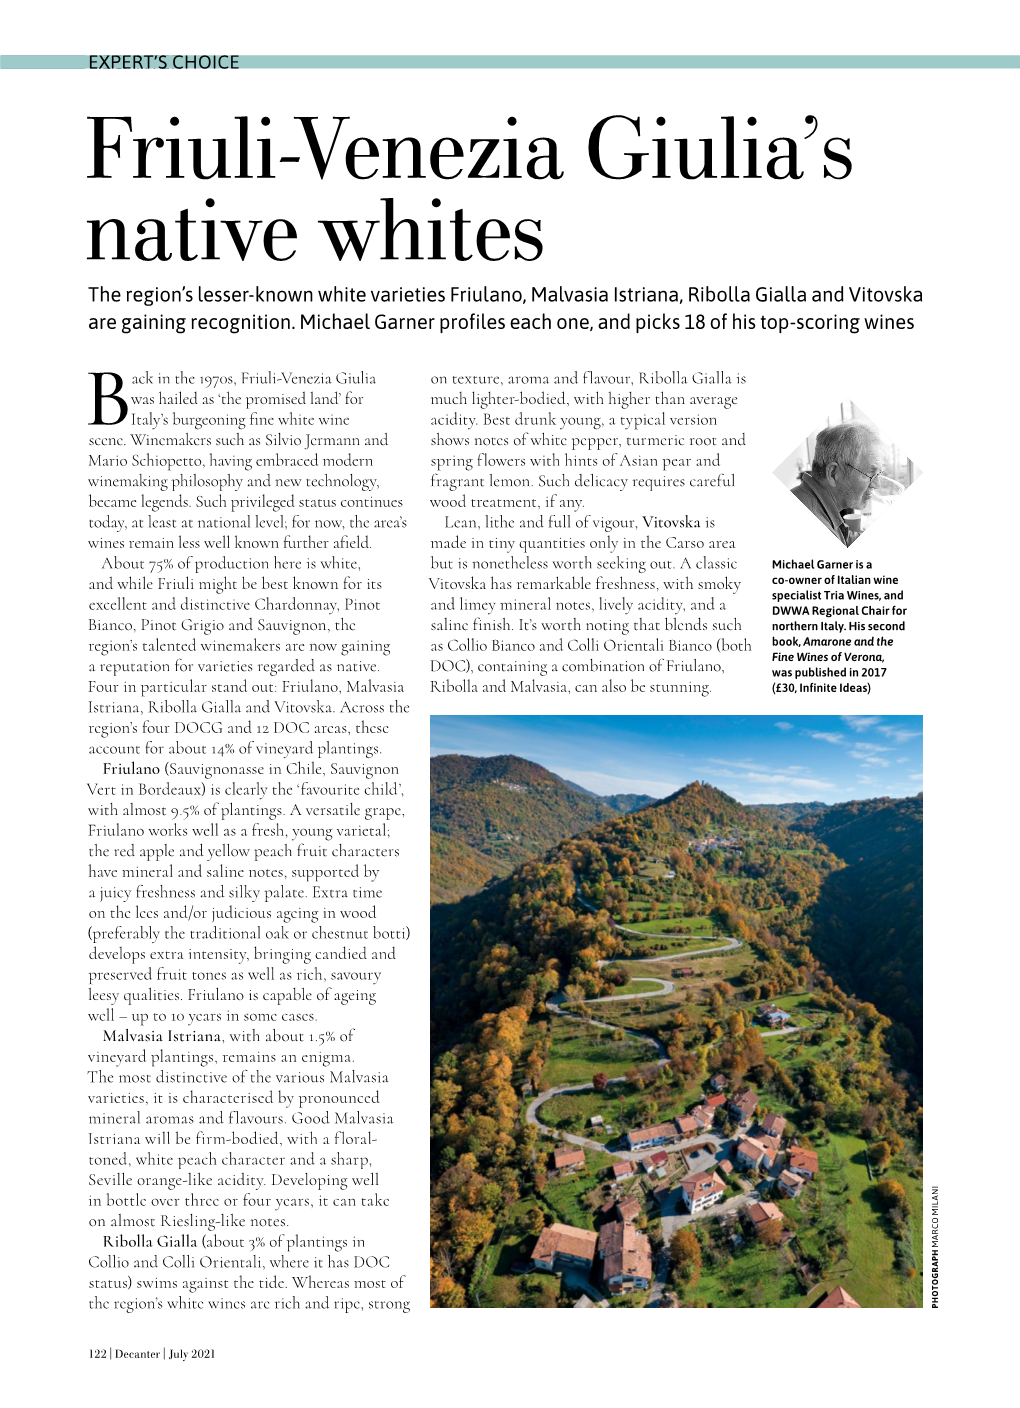 Friuli-Venezia Giulia's Native Whites